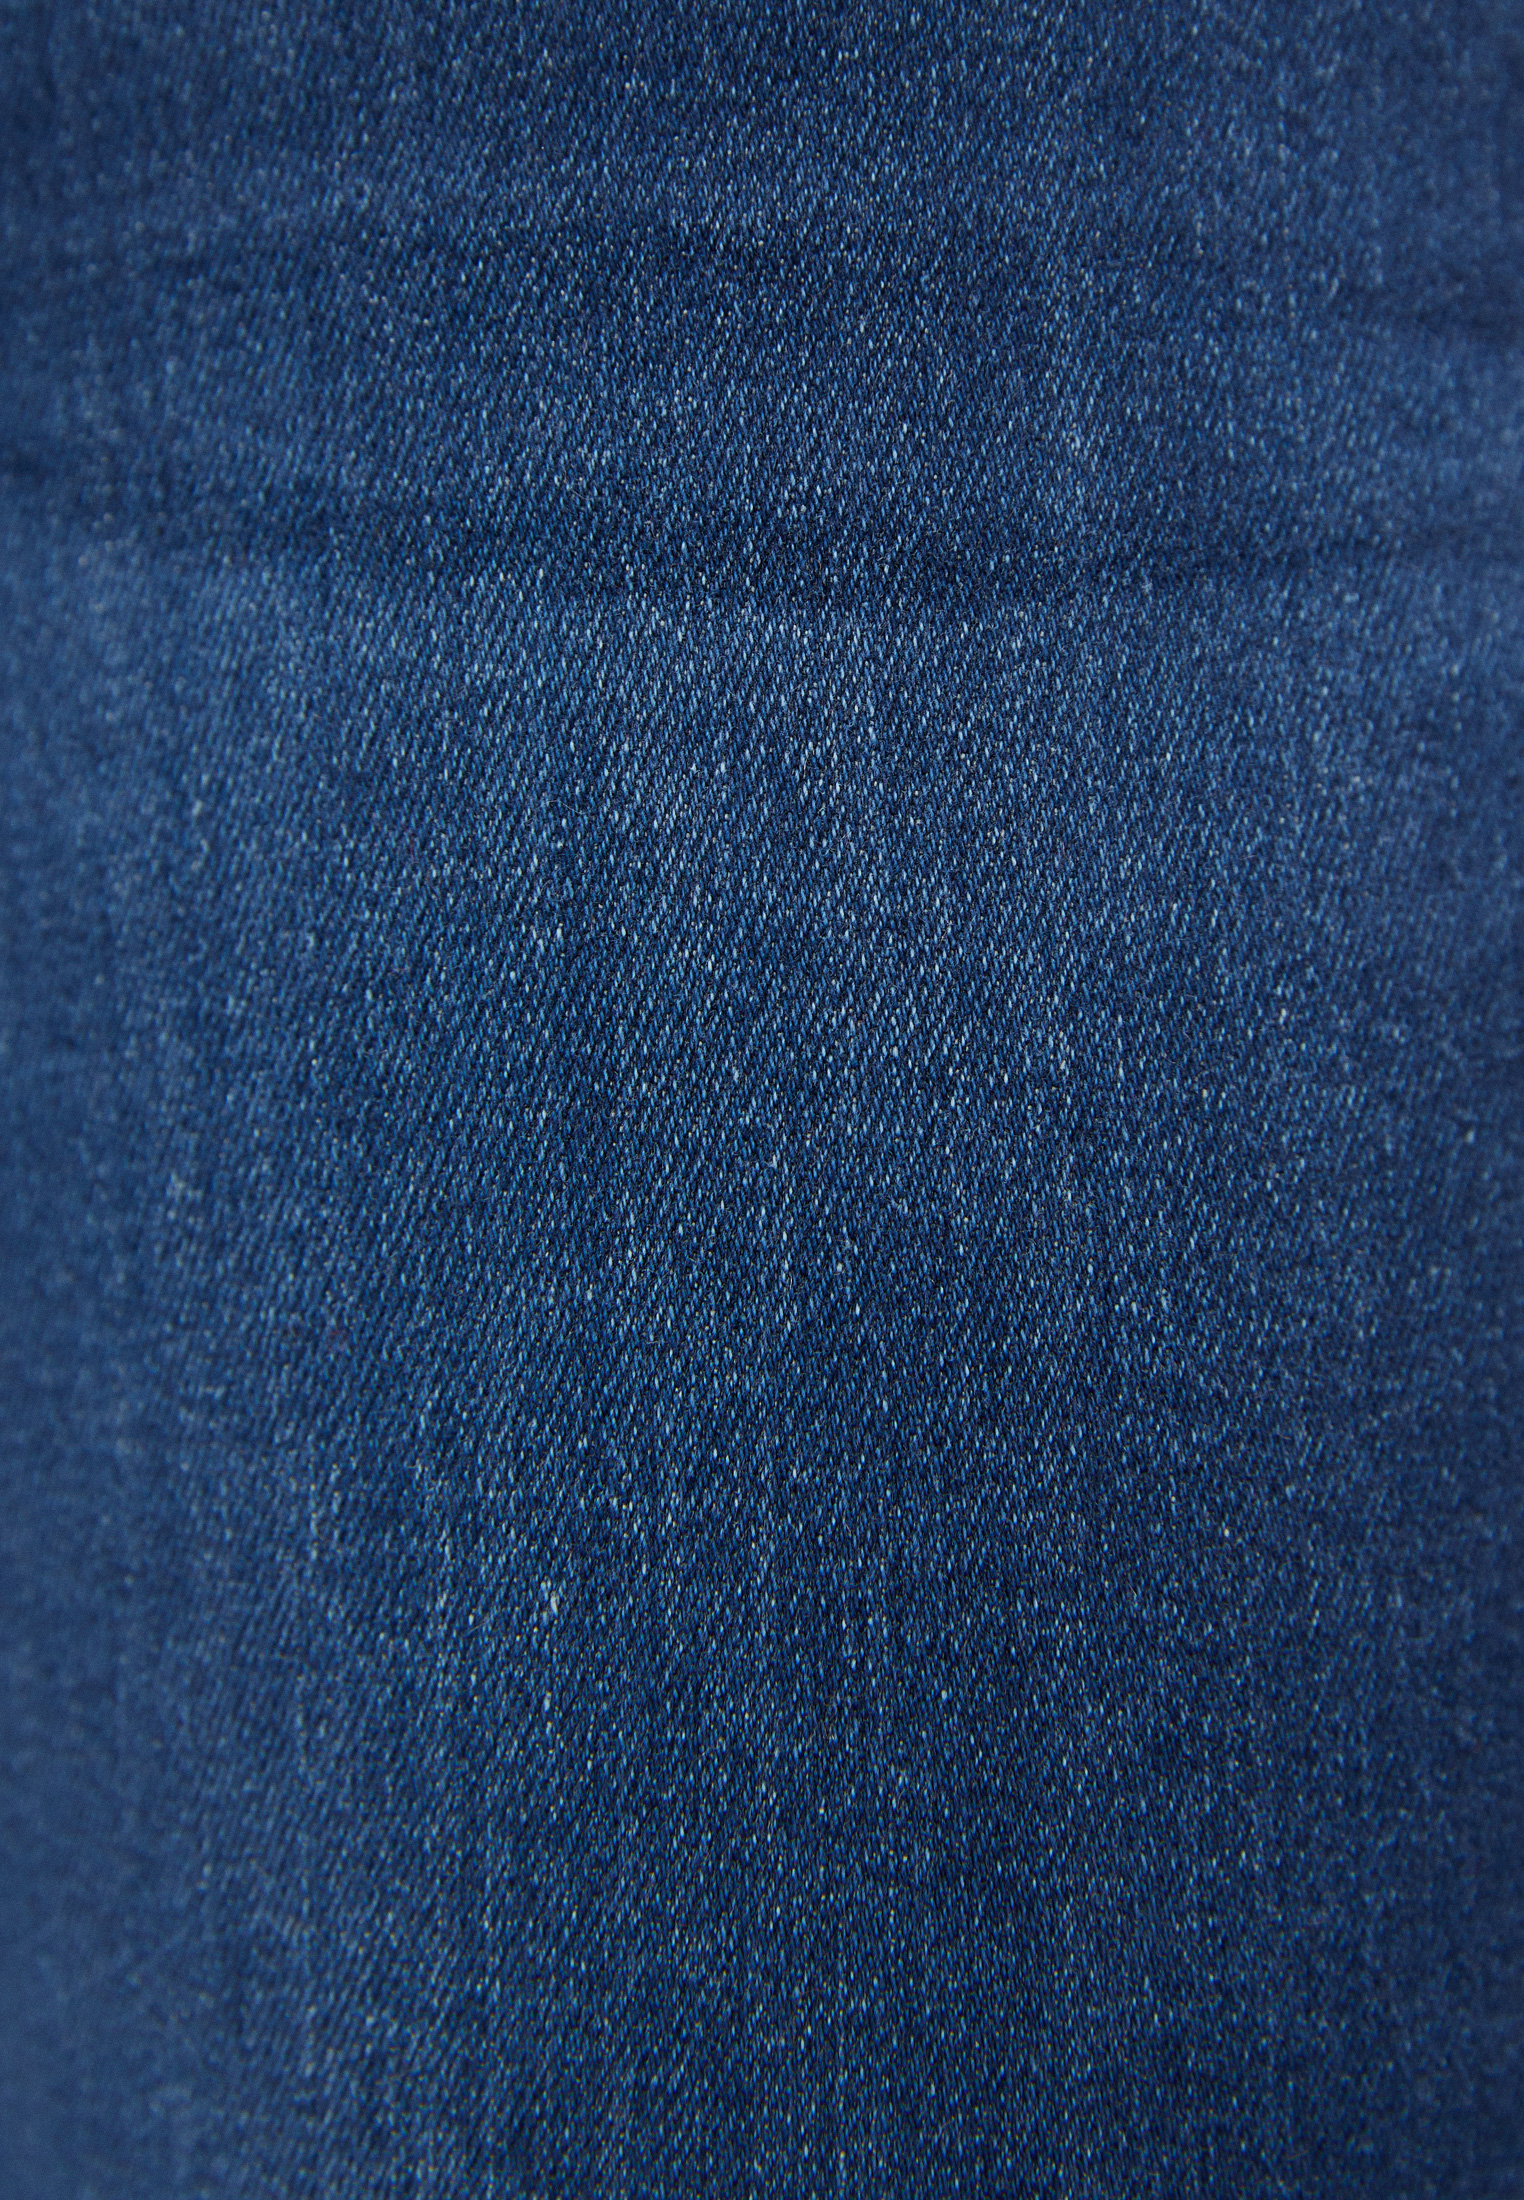 Текстура джинсов. Джинсовая ткань. Текстура джинсовой ткани. Джинсовая ткань фон. Джинсовая ткань деним.